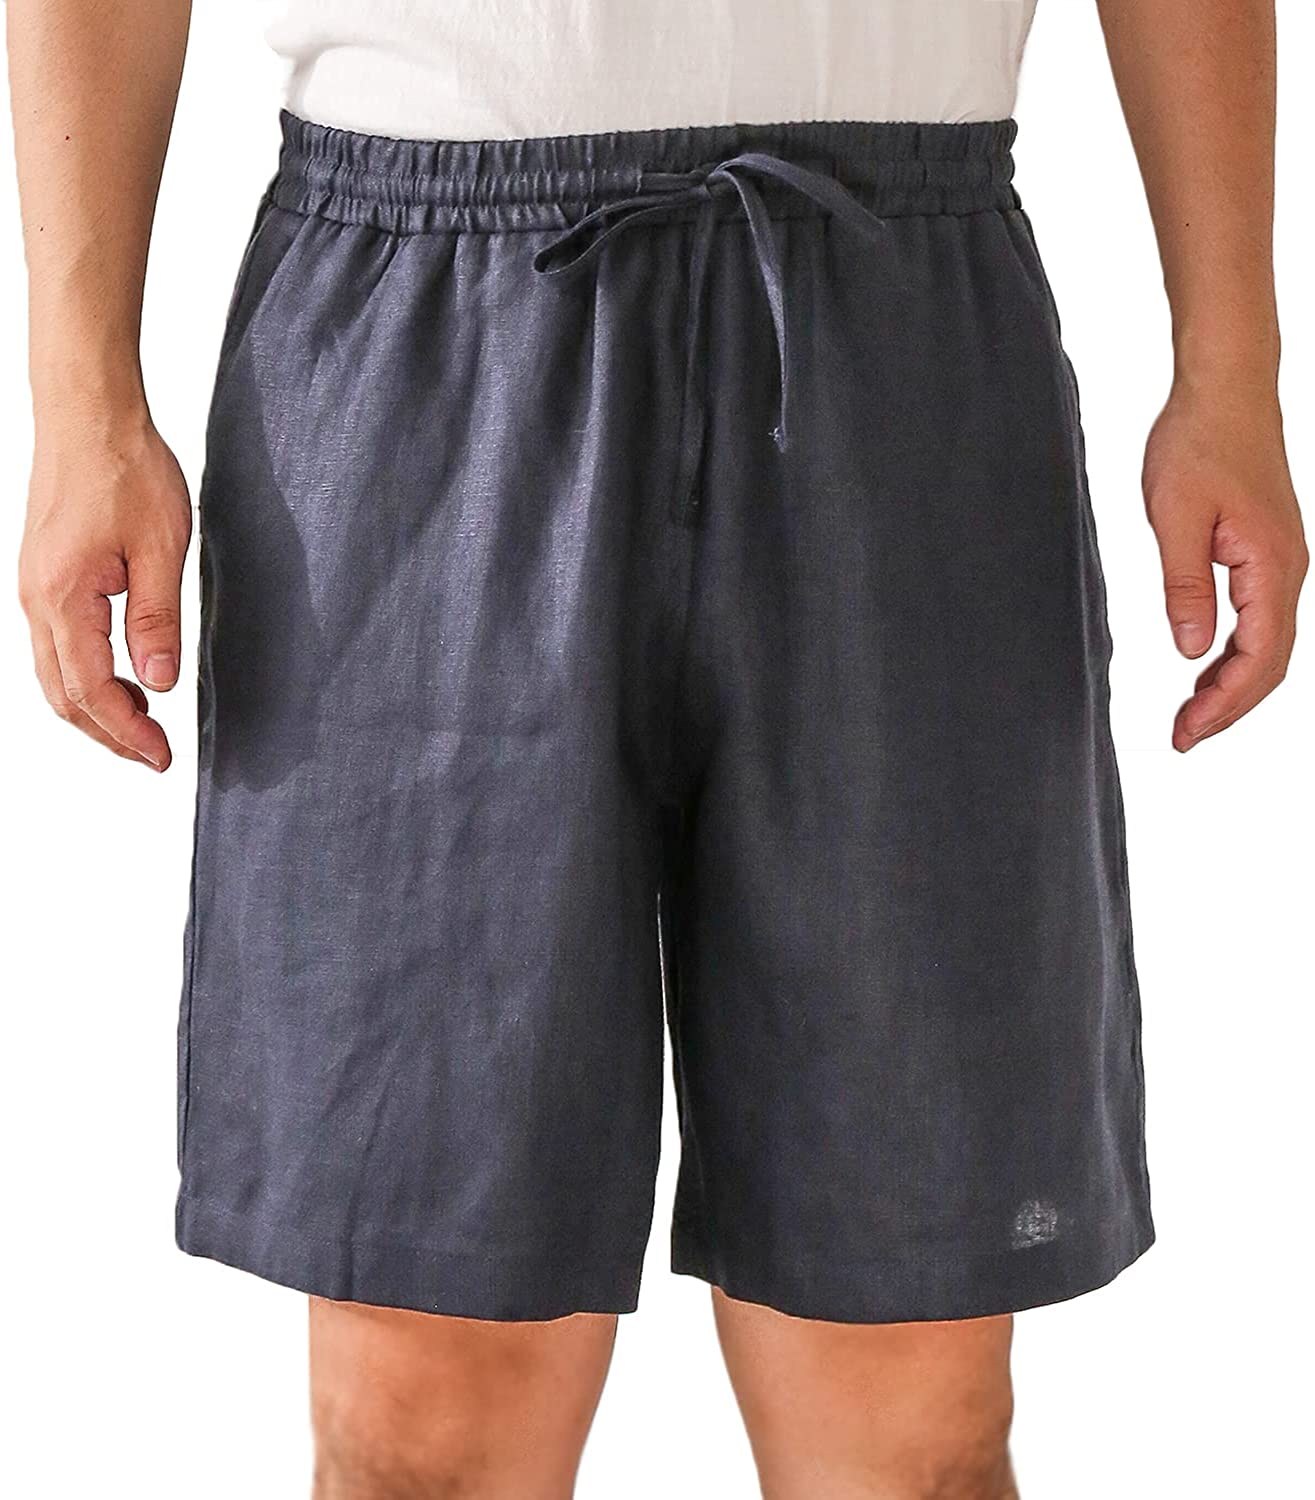 𝒩𝒯𝒢 ღ𝓃𝓁𝒾𝓃𝑒 M / Navy Blue Linen Pocket Short For Men